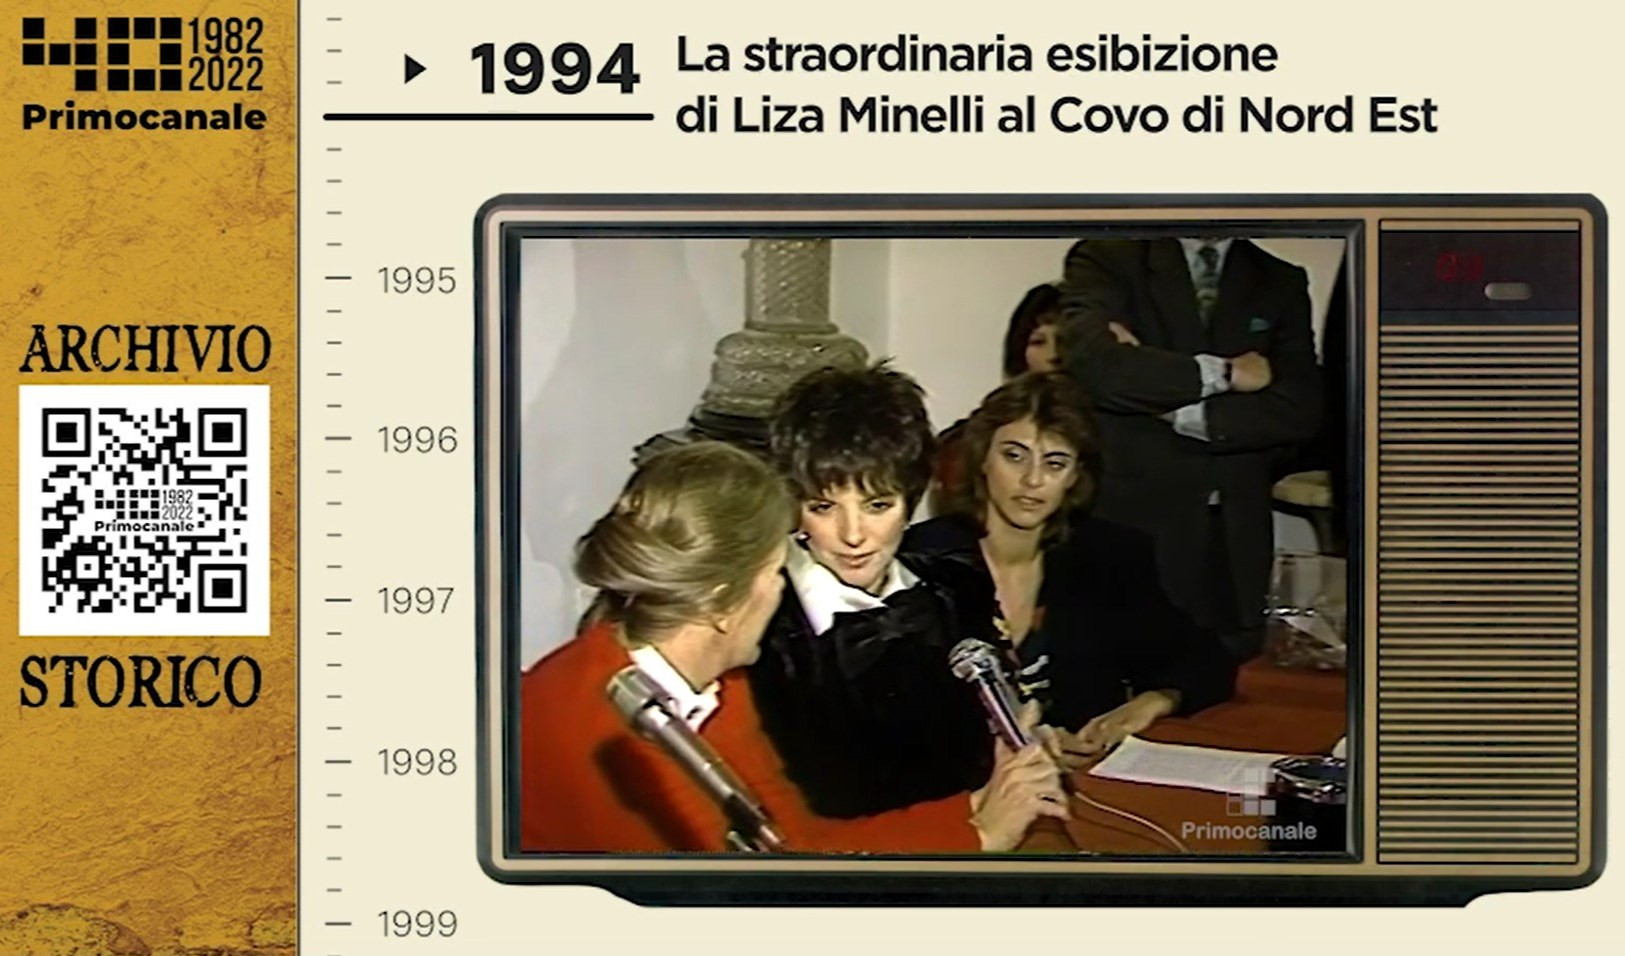 Dall'archivio storico di Primocanale, 1994: Liza Minnelli in Liguria 